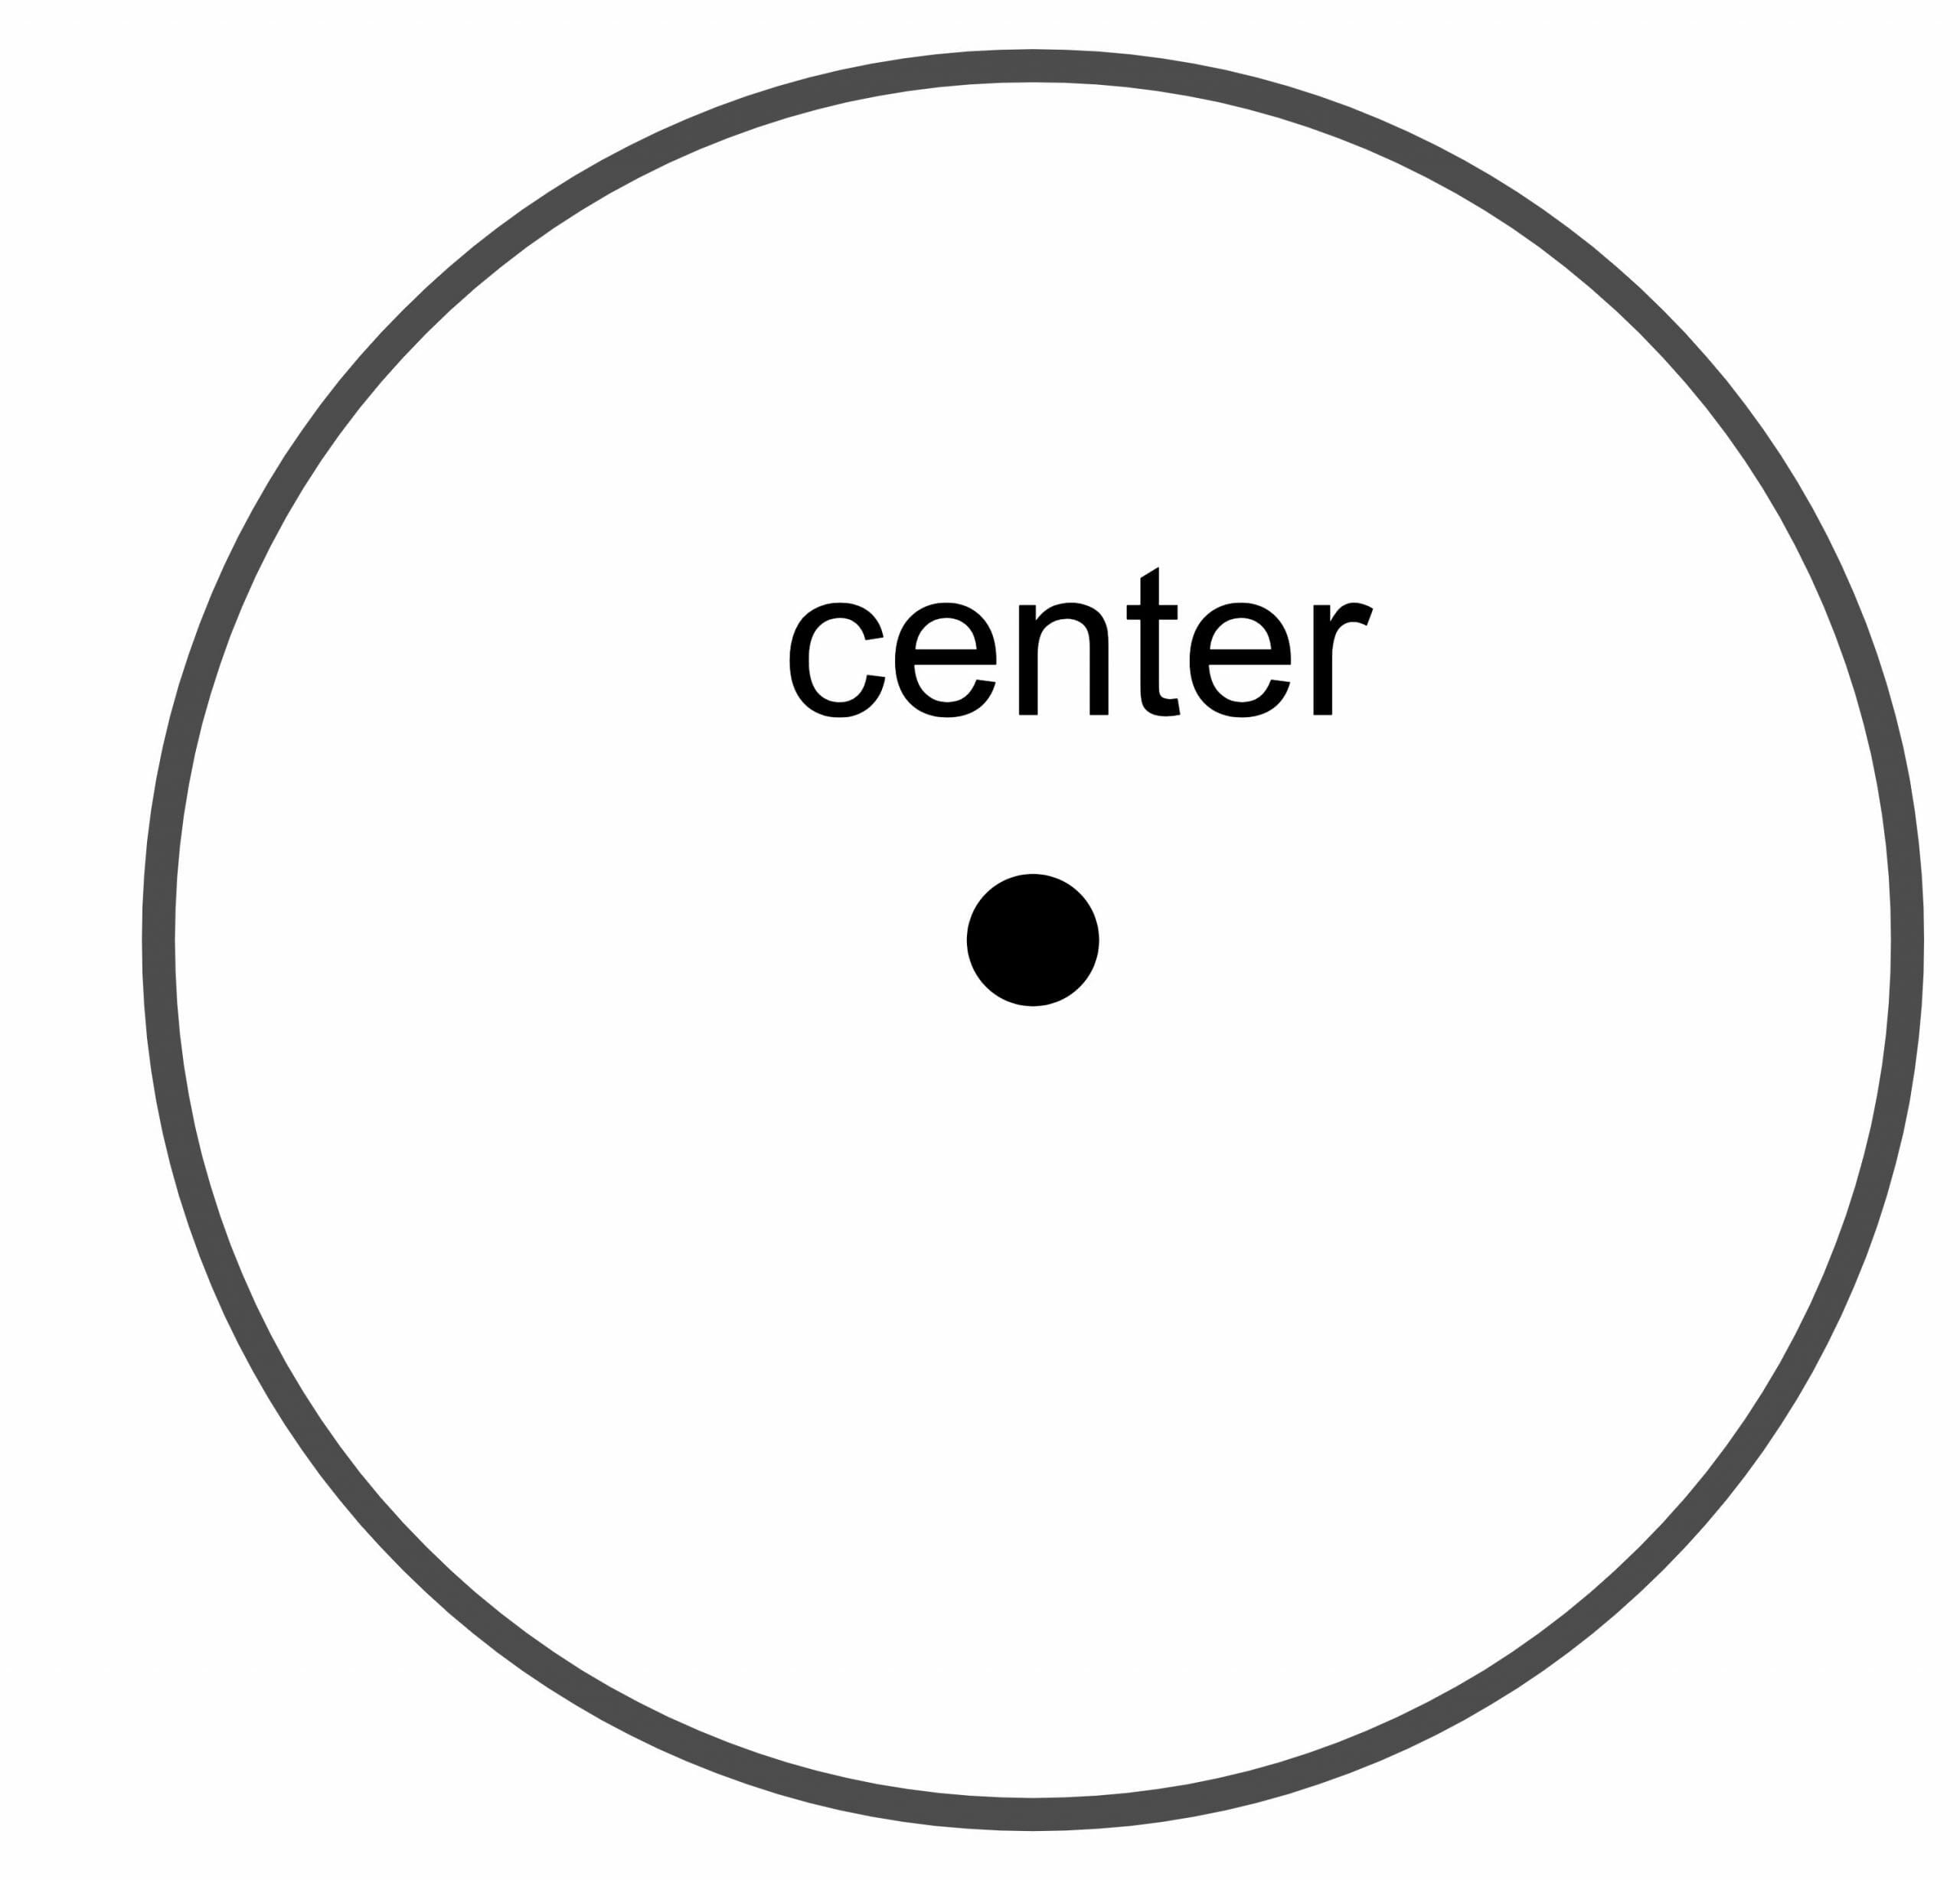 Centro del círculo